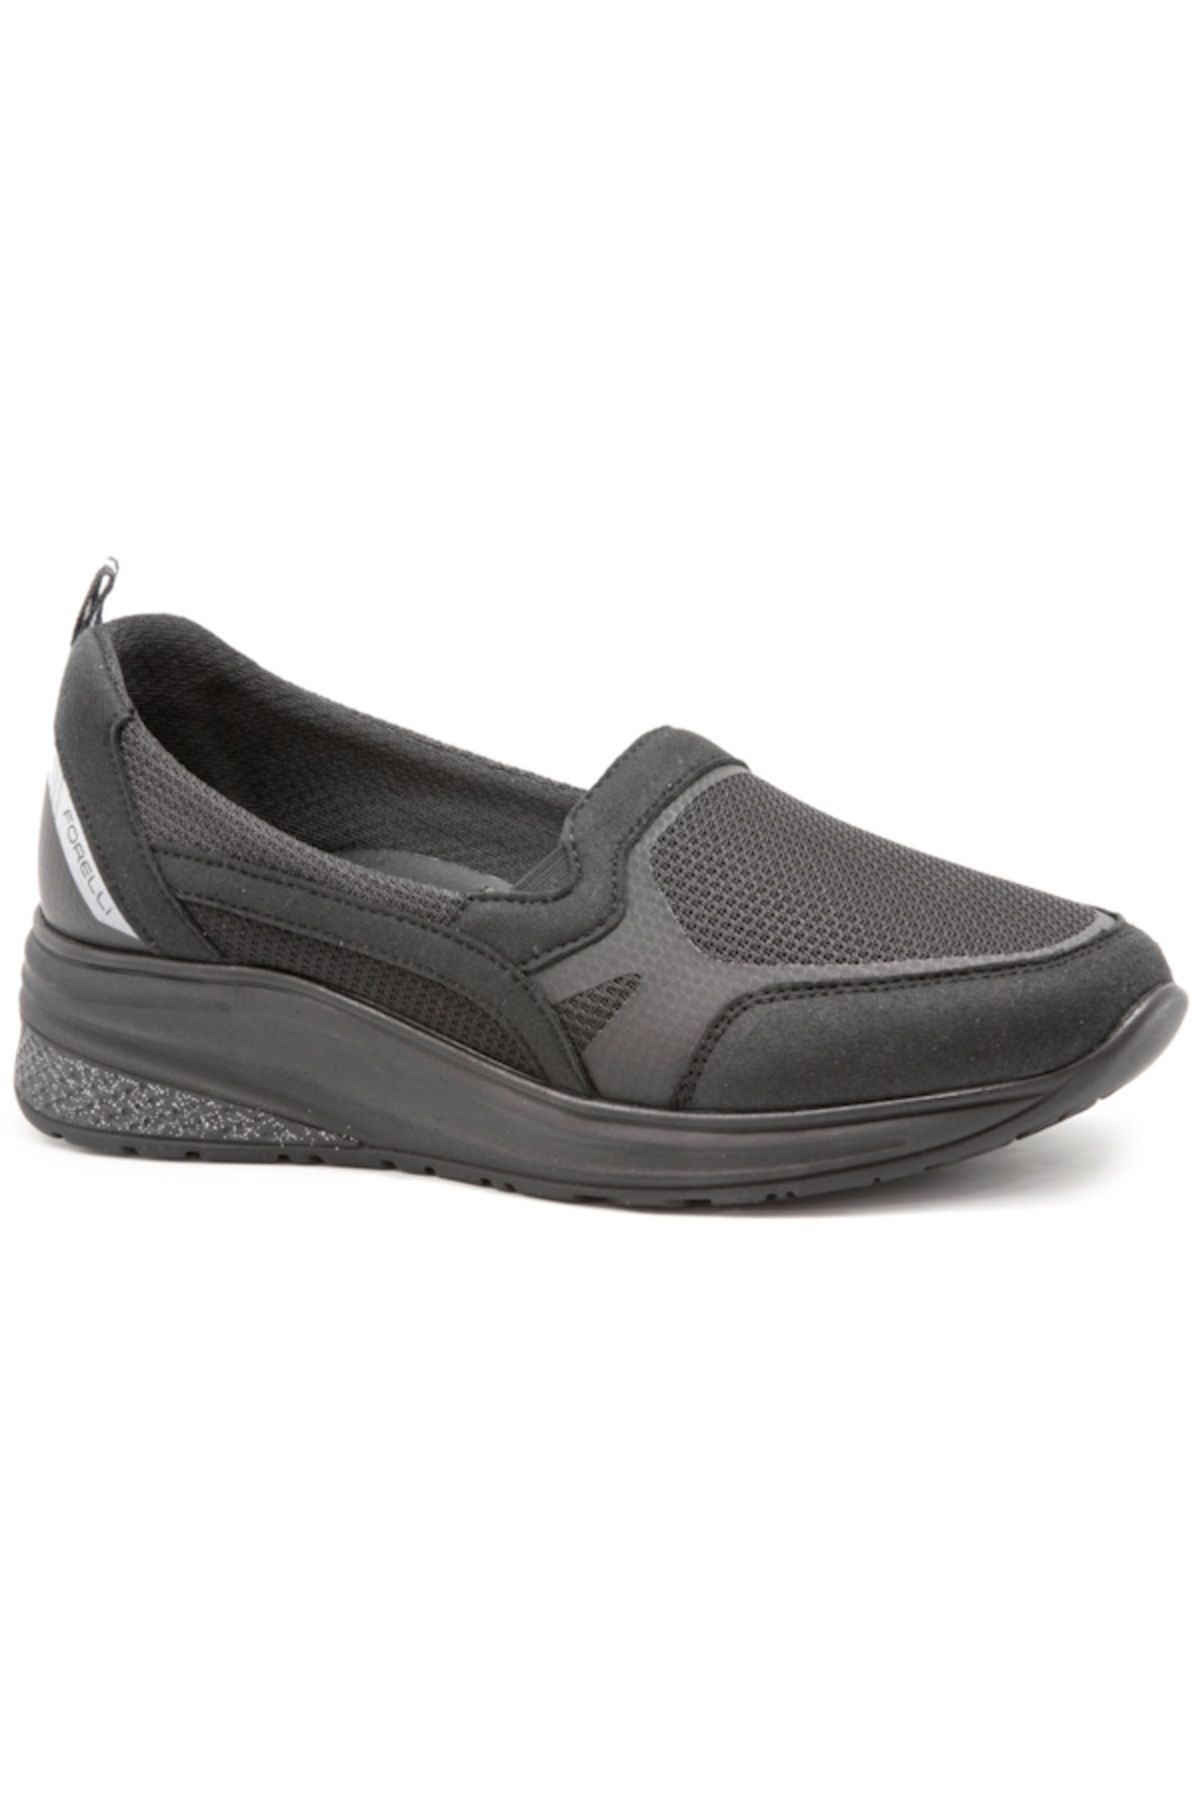 Forelli SONYA-G 30010 Siyah Tekstil Kumaş Kadın Comfort Ayakkabı